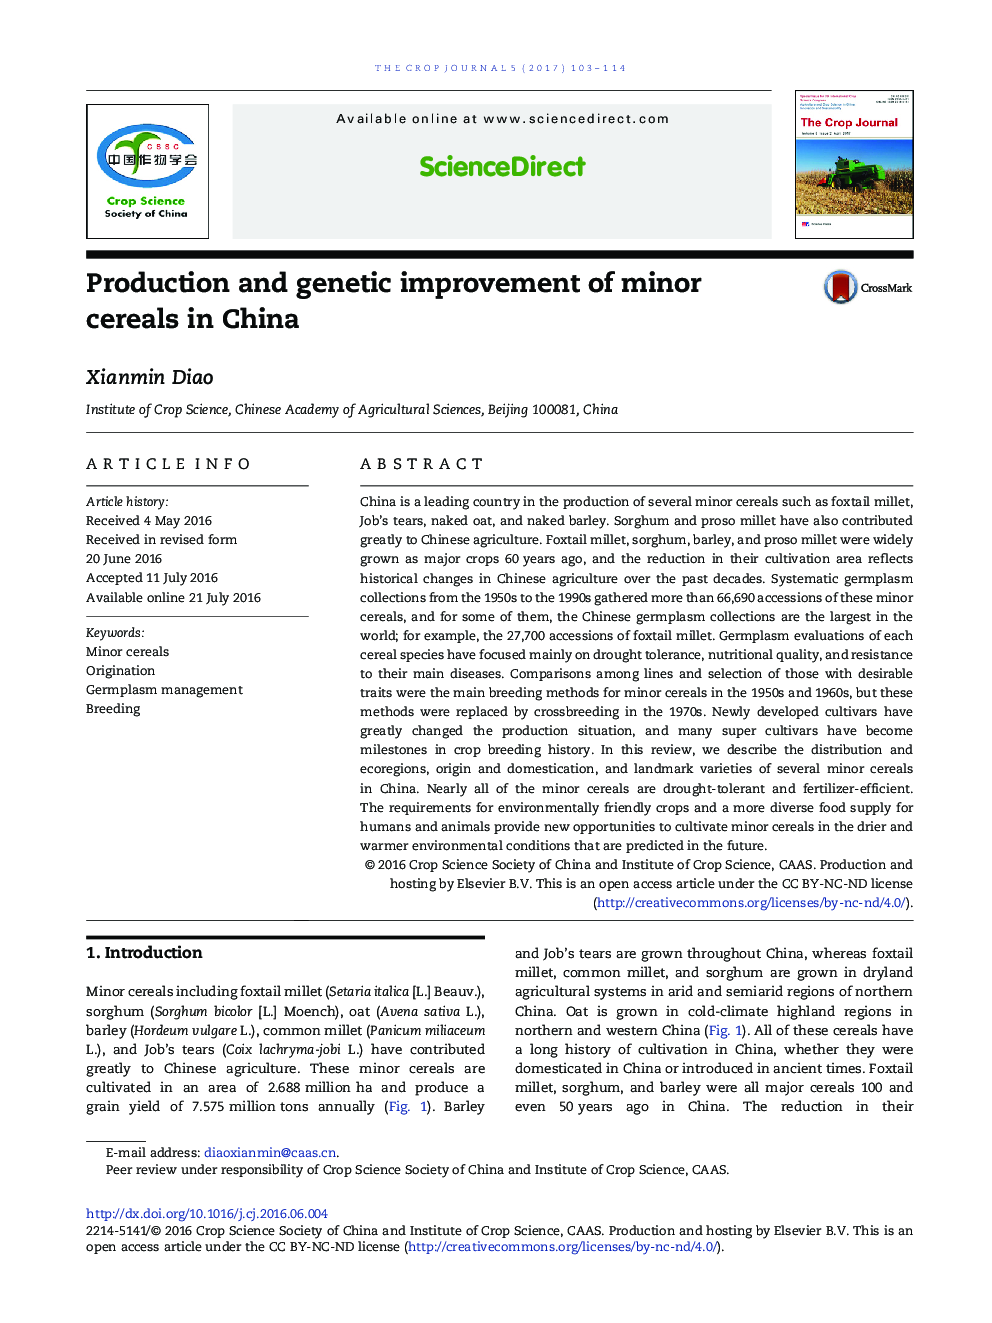 تولید و بهبود ژنتیکی غلات کوچک در چین 